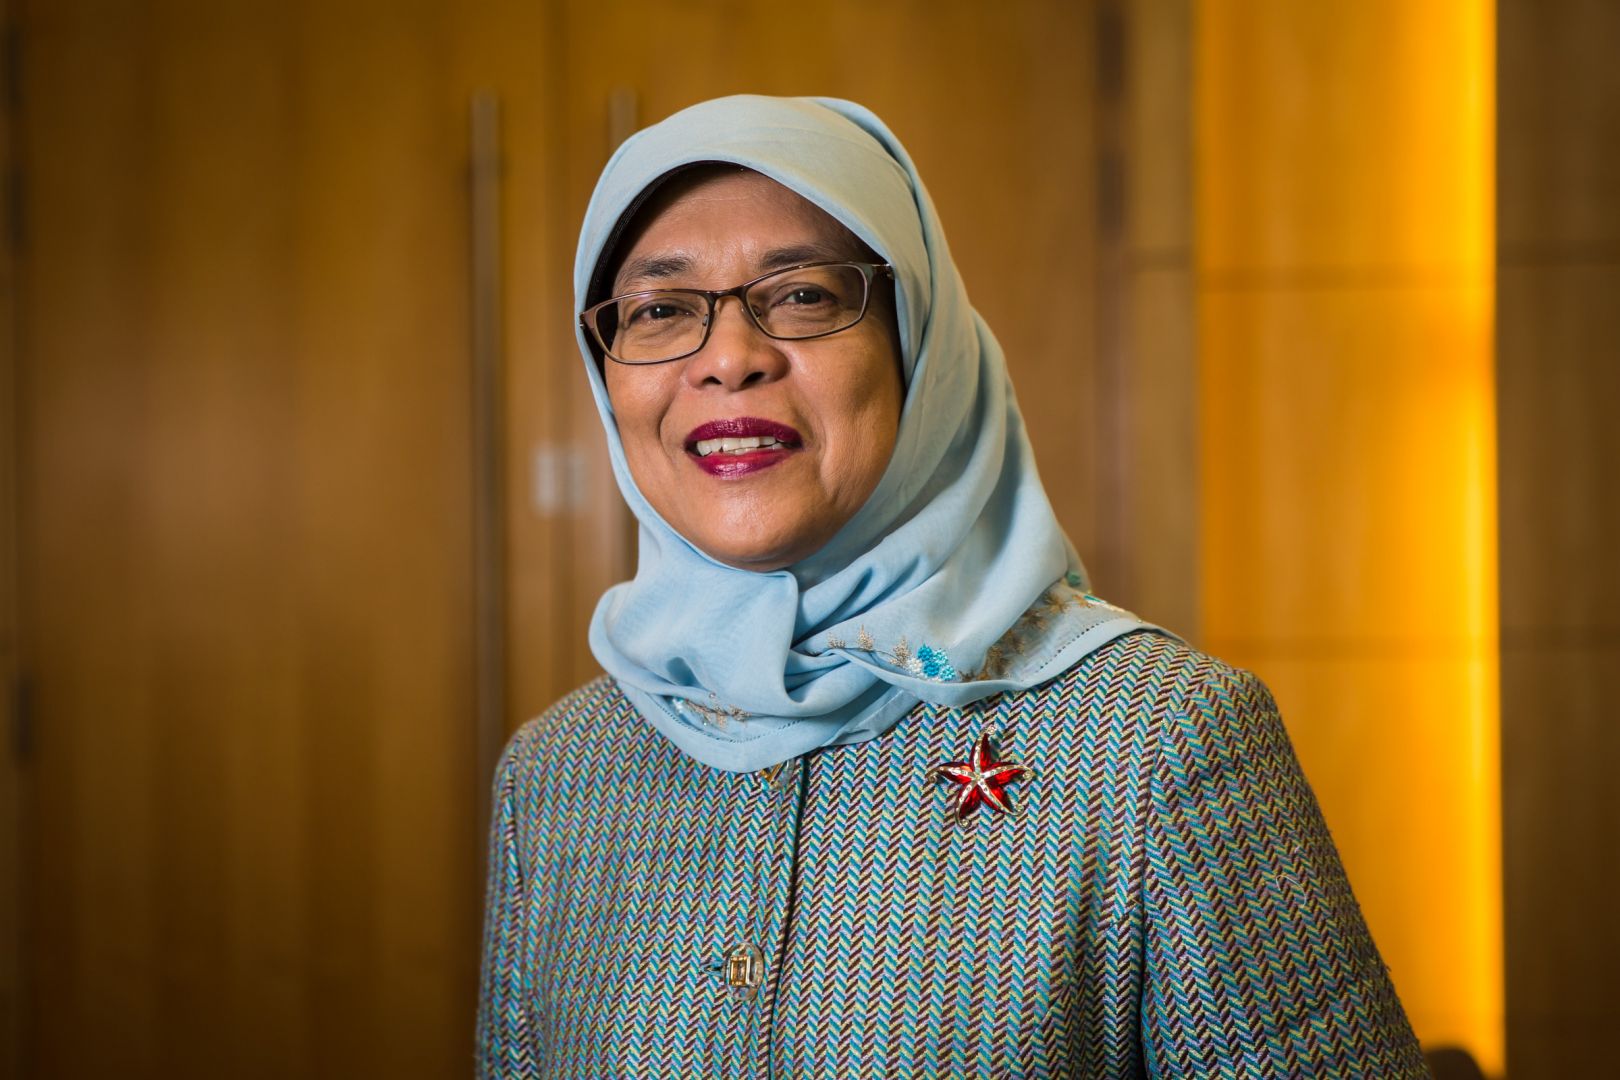 Halimah Yacob, Anak Penjual Nasi Padang Jadi Presiden Wanita Pertama Singapura